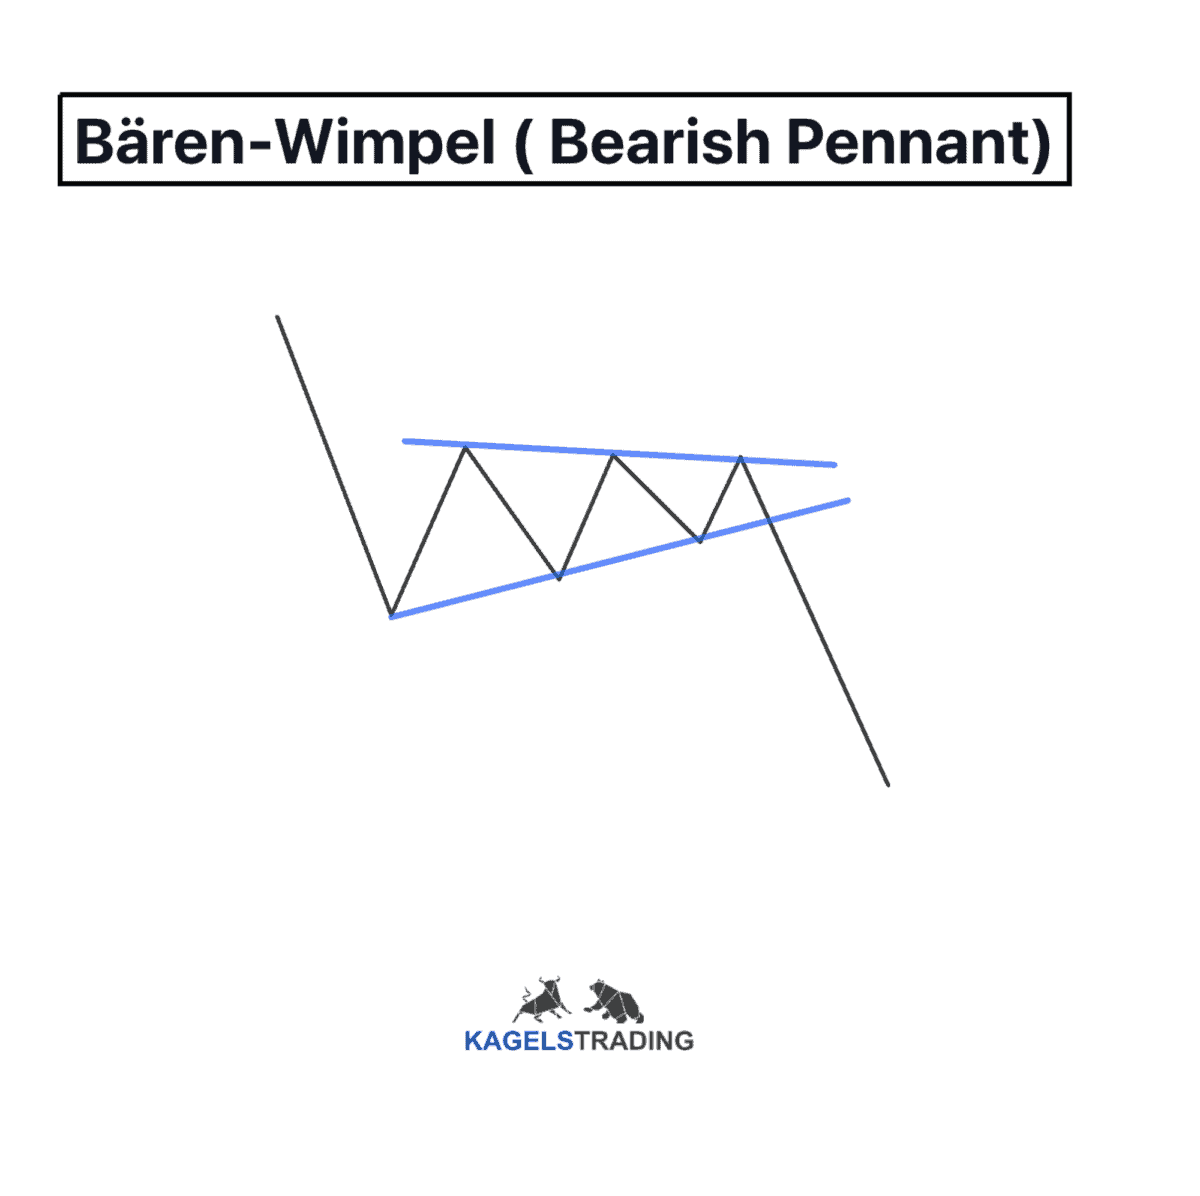 Beispiel für baeren wimpel bearish pennant in der technischen Analyse